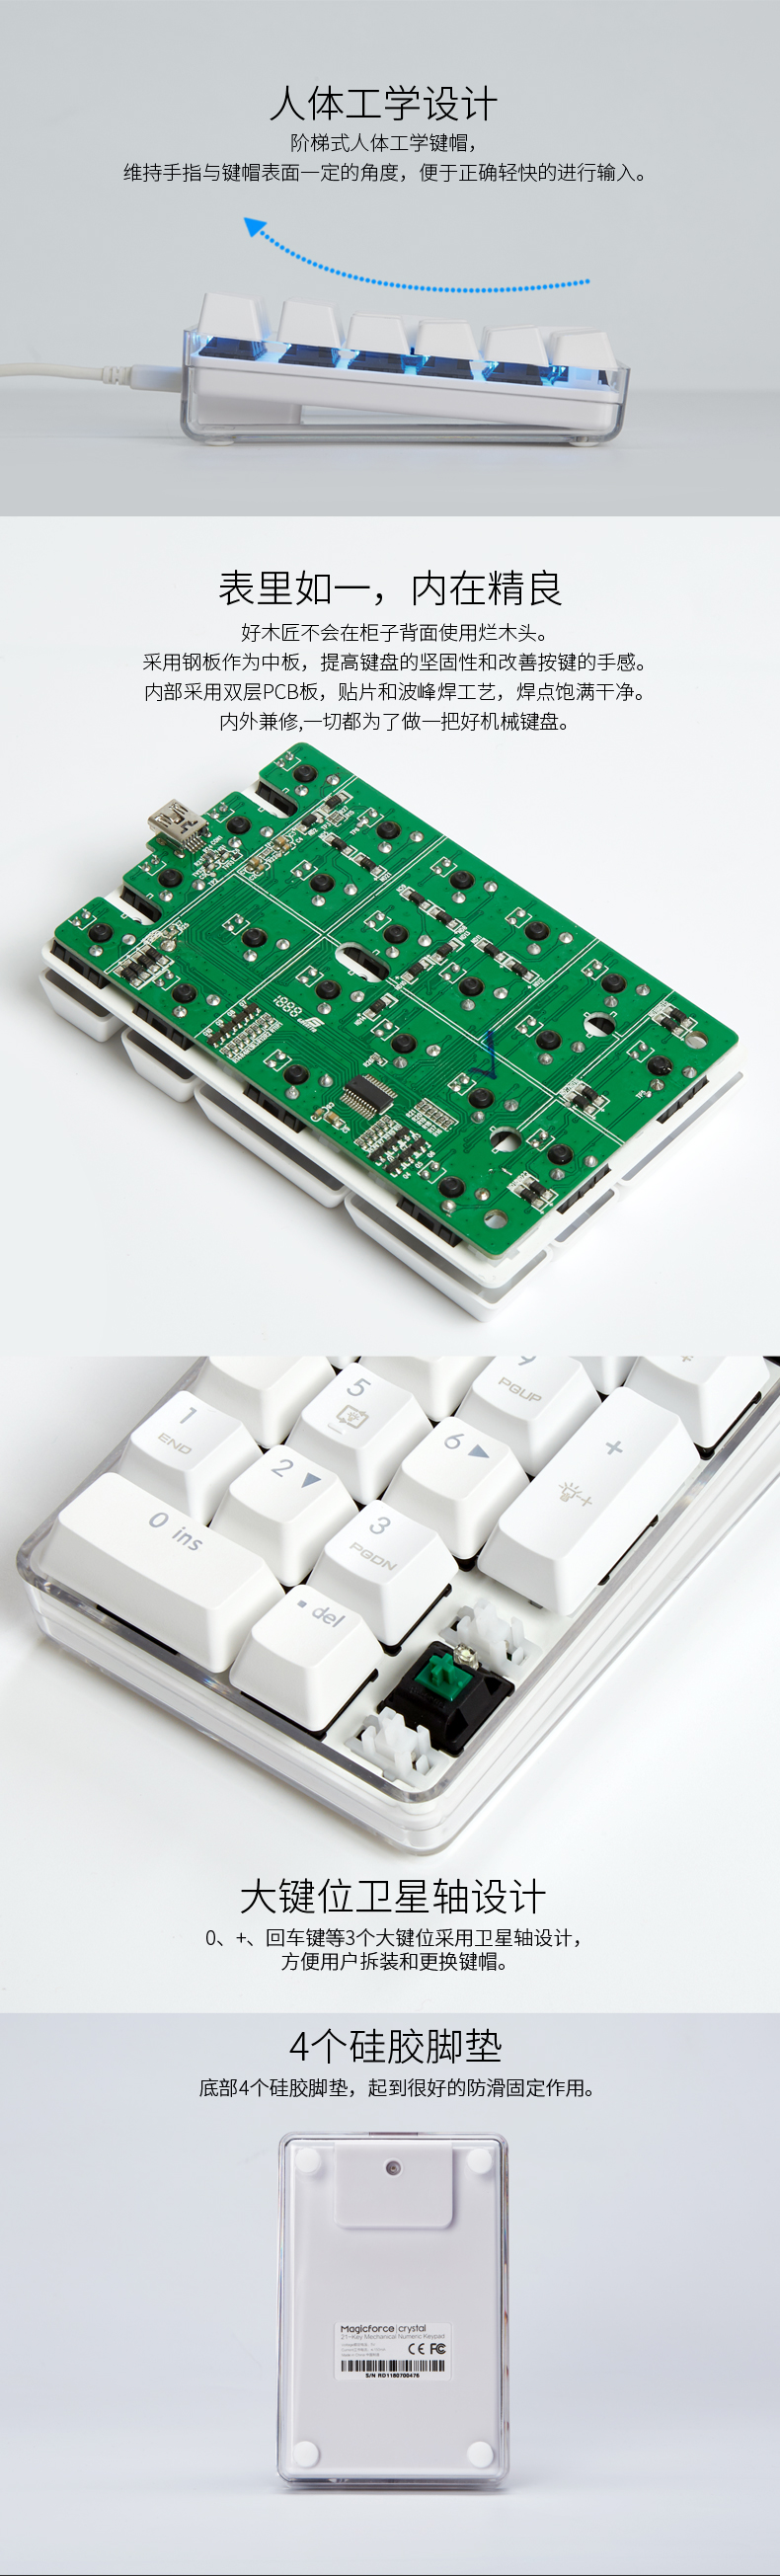 魔蛋晶体21产品详情PC端-晶体21键数字键盘-产品描述京东_04